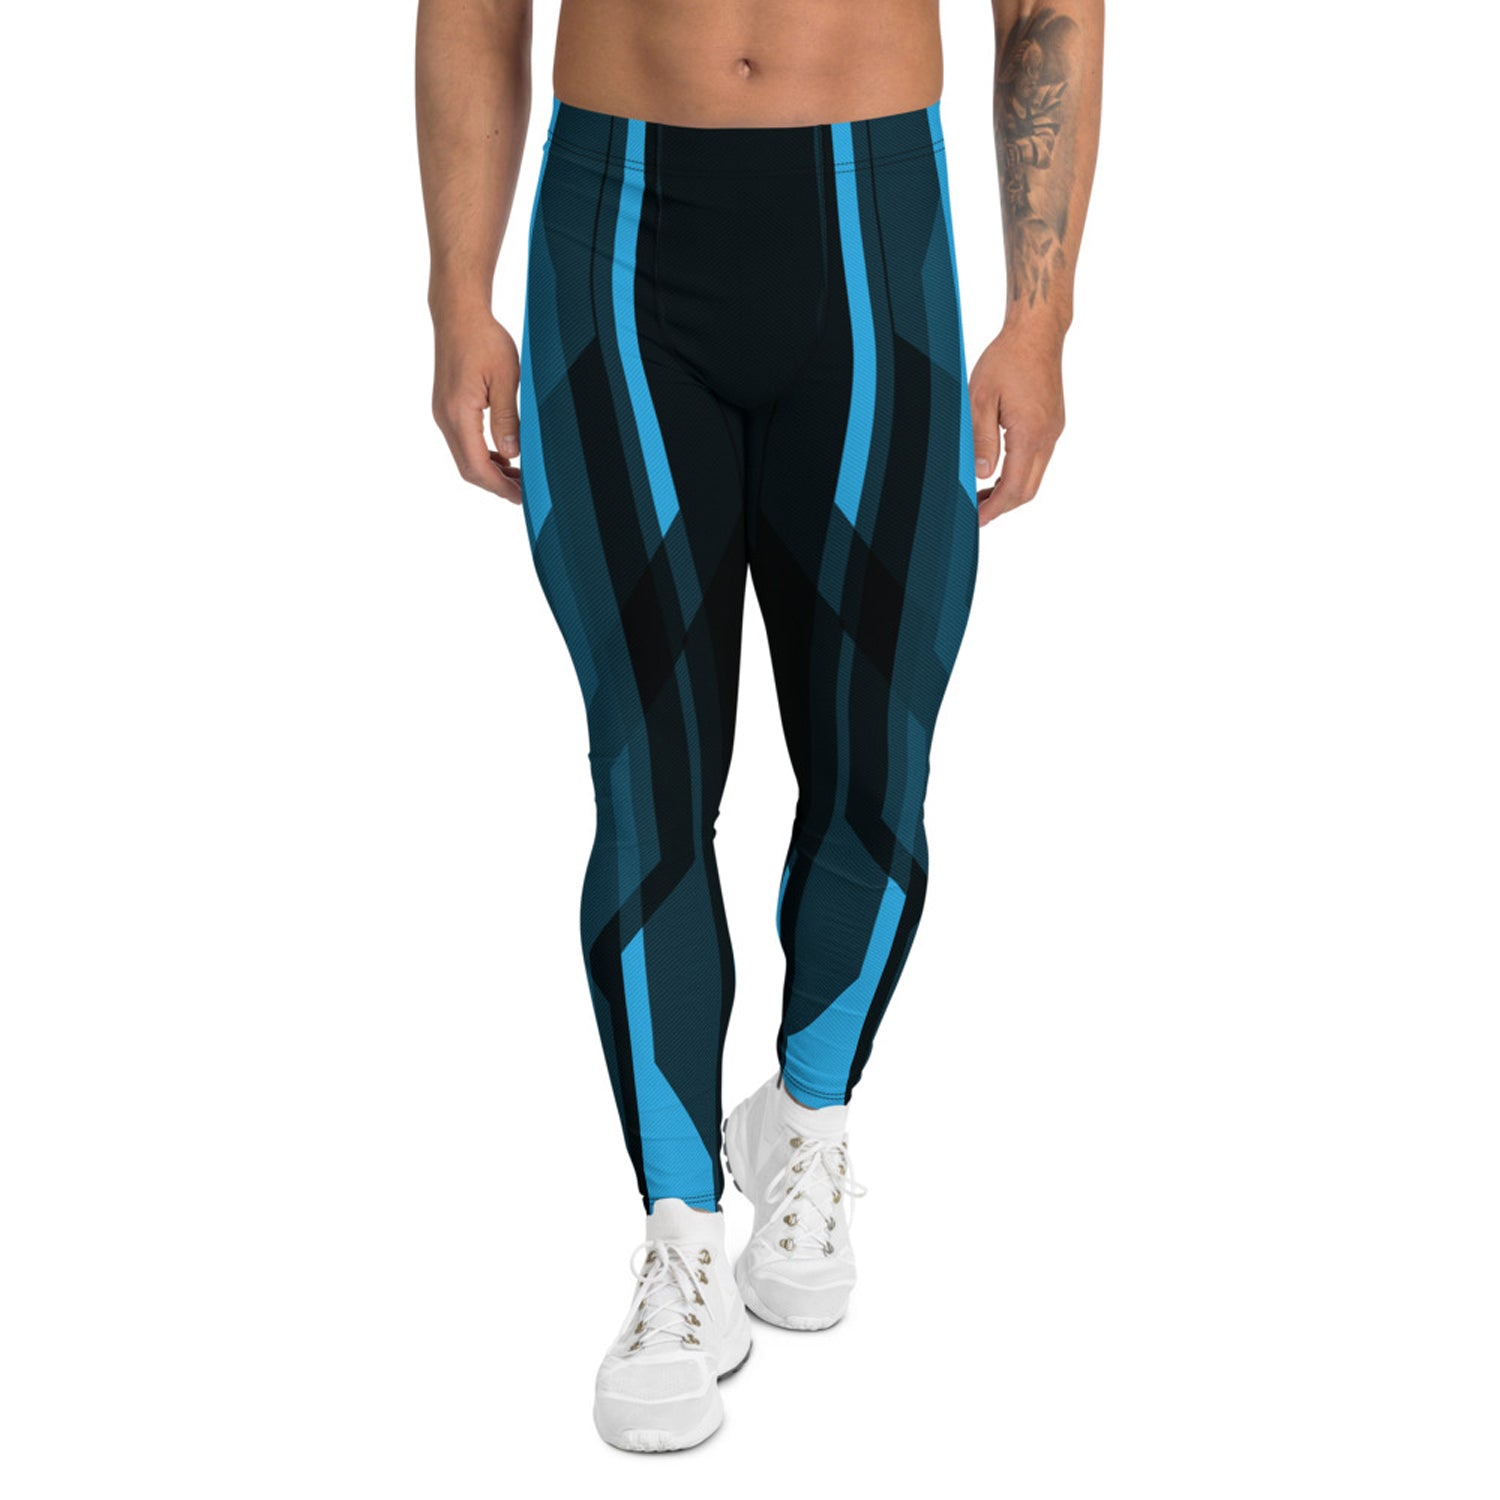 blue Tron inspired leggings